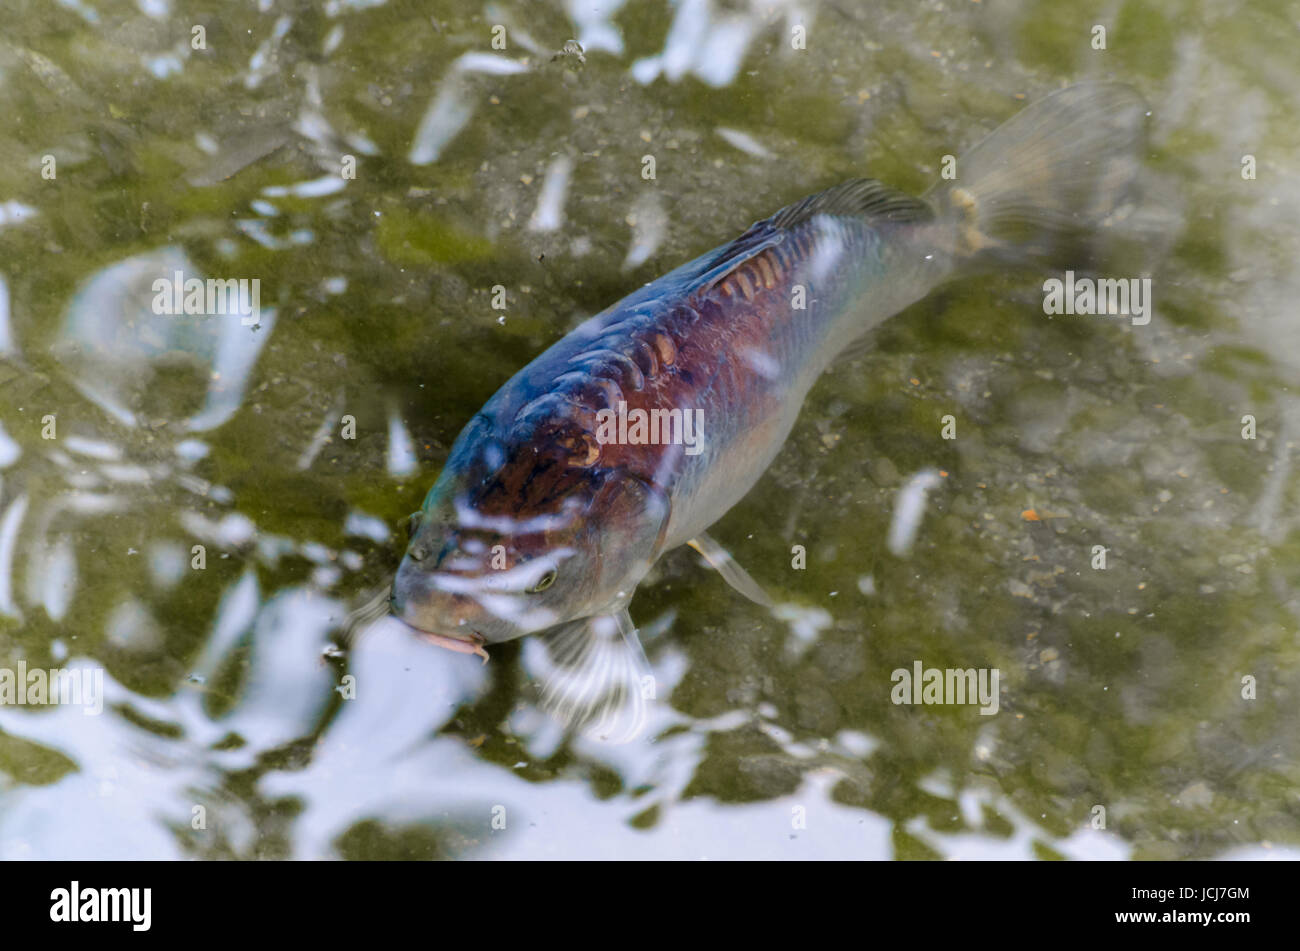 Karpfen,Koy, Zierkarpfen, Fisch  in einem Teich mit  Blick aus dem grünen Wasser. Stock Photo